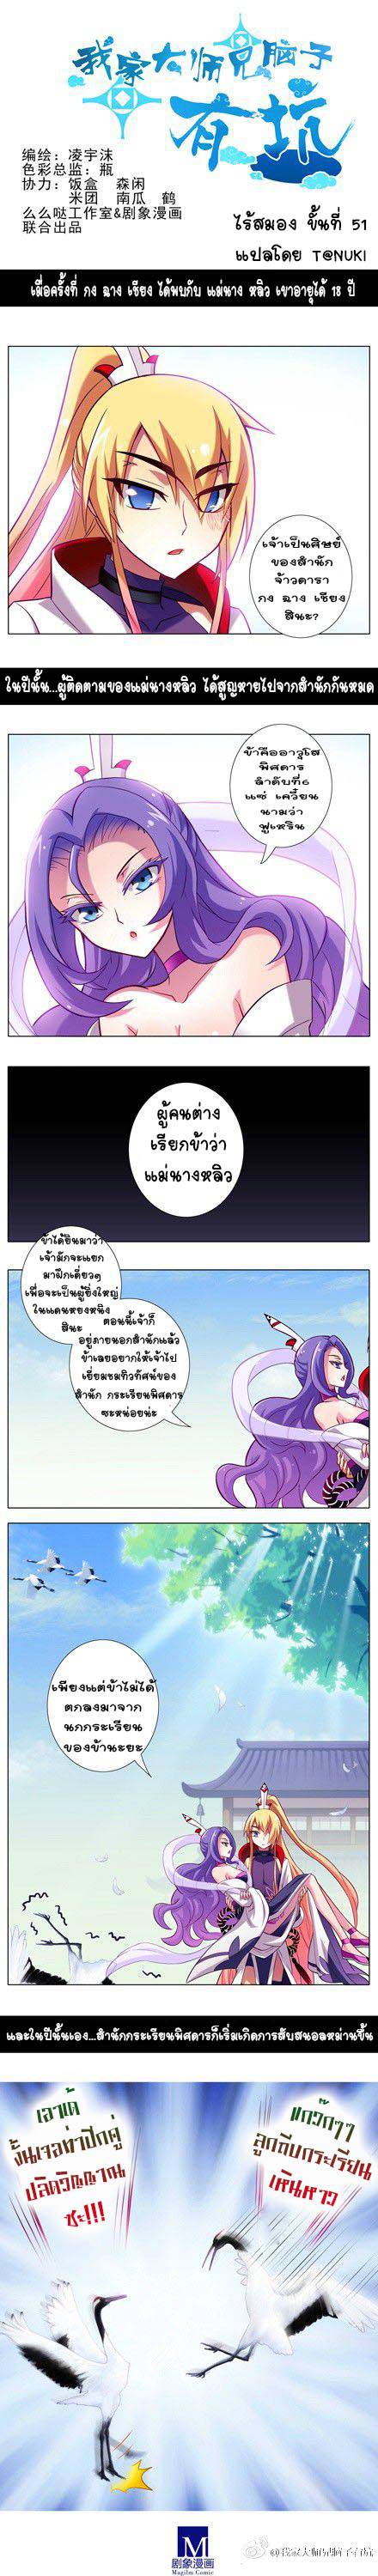 อ่านการ์ตูน Wo Jia Dashi Xiong Naozi You Keng 51 Th แปลไทย อัพเดทรวดเร็วทันใจที่ Kingsmanga